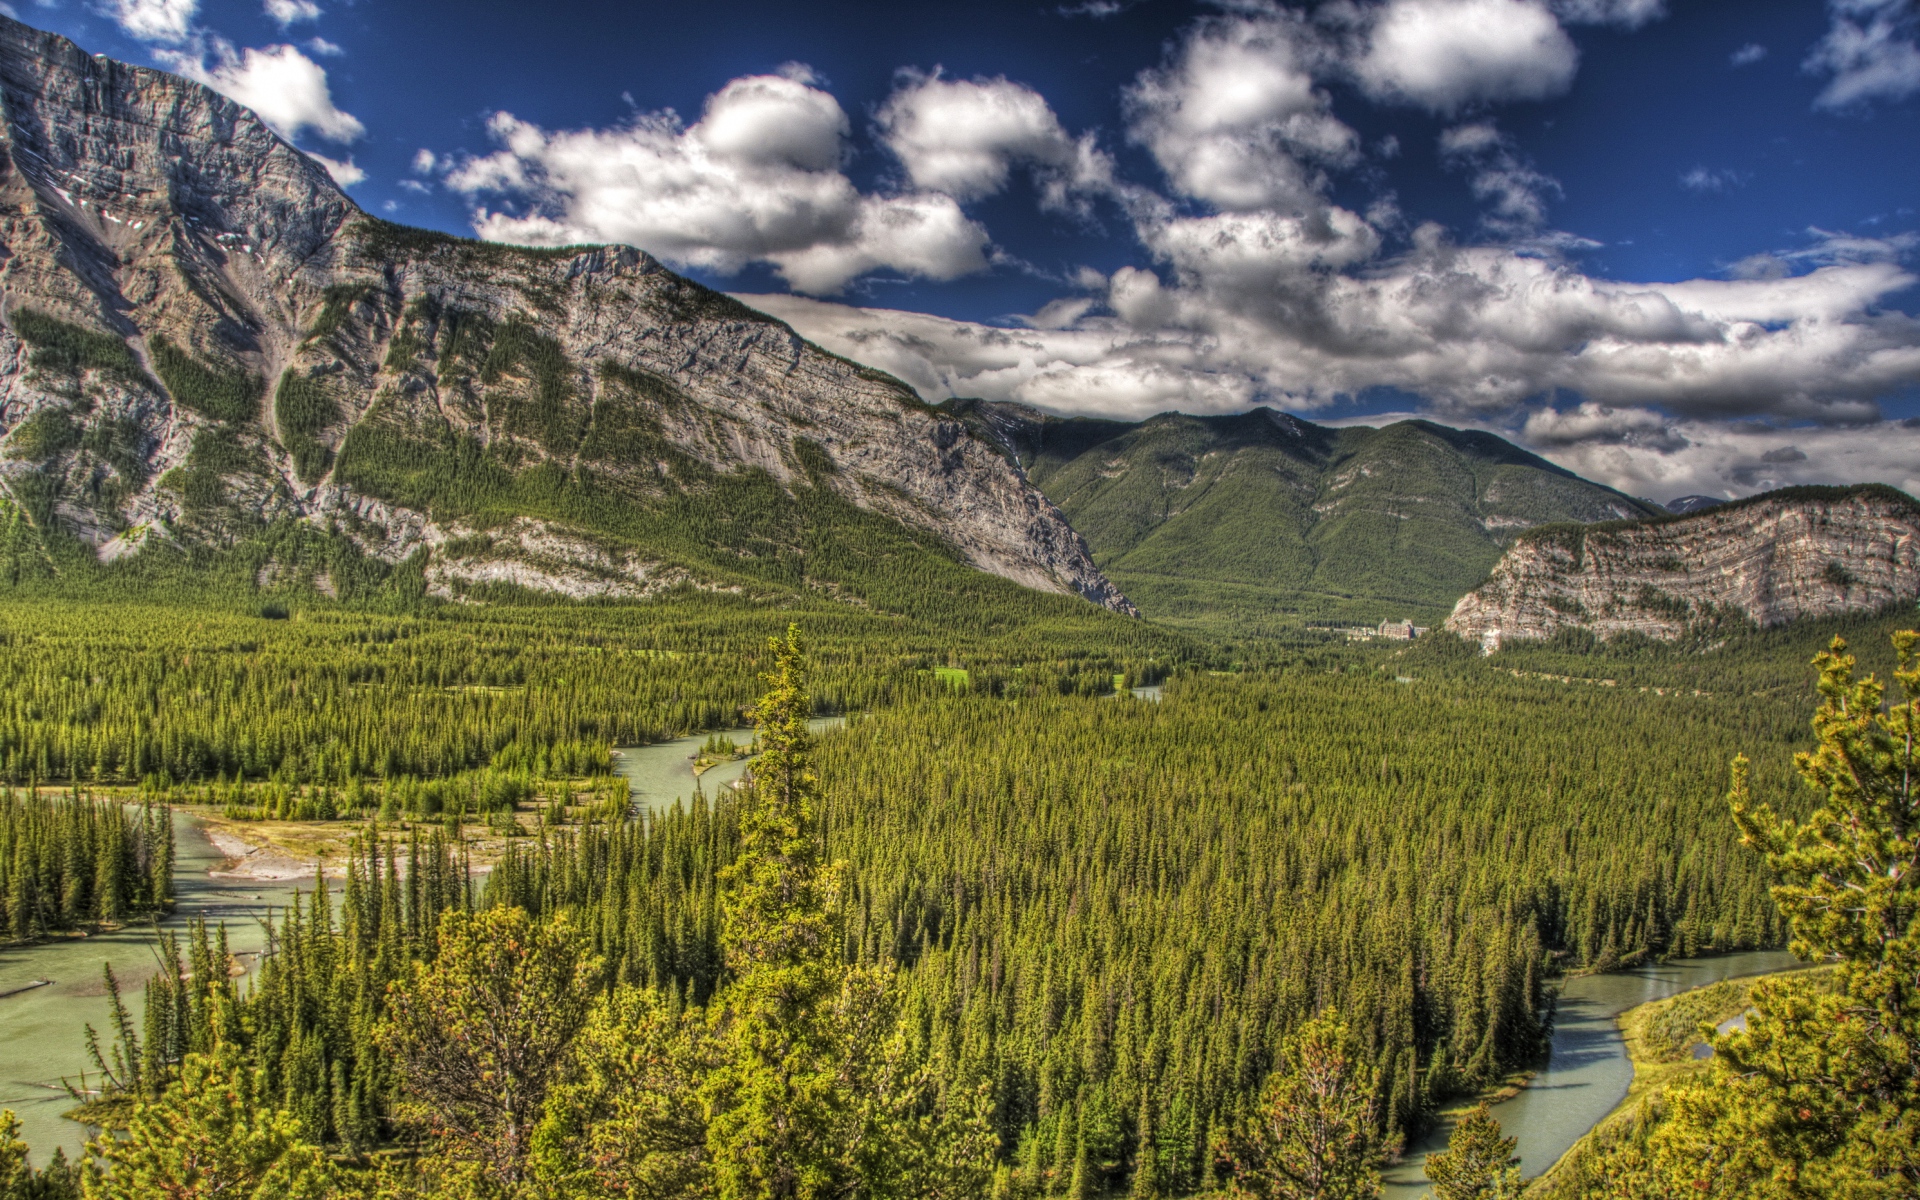 Картинки Banff, alberta, canada, горы, деревья, hdr фото и обои на рабочий стол